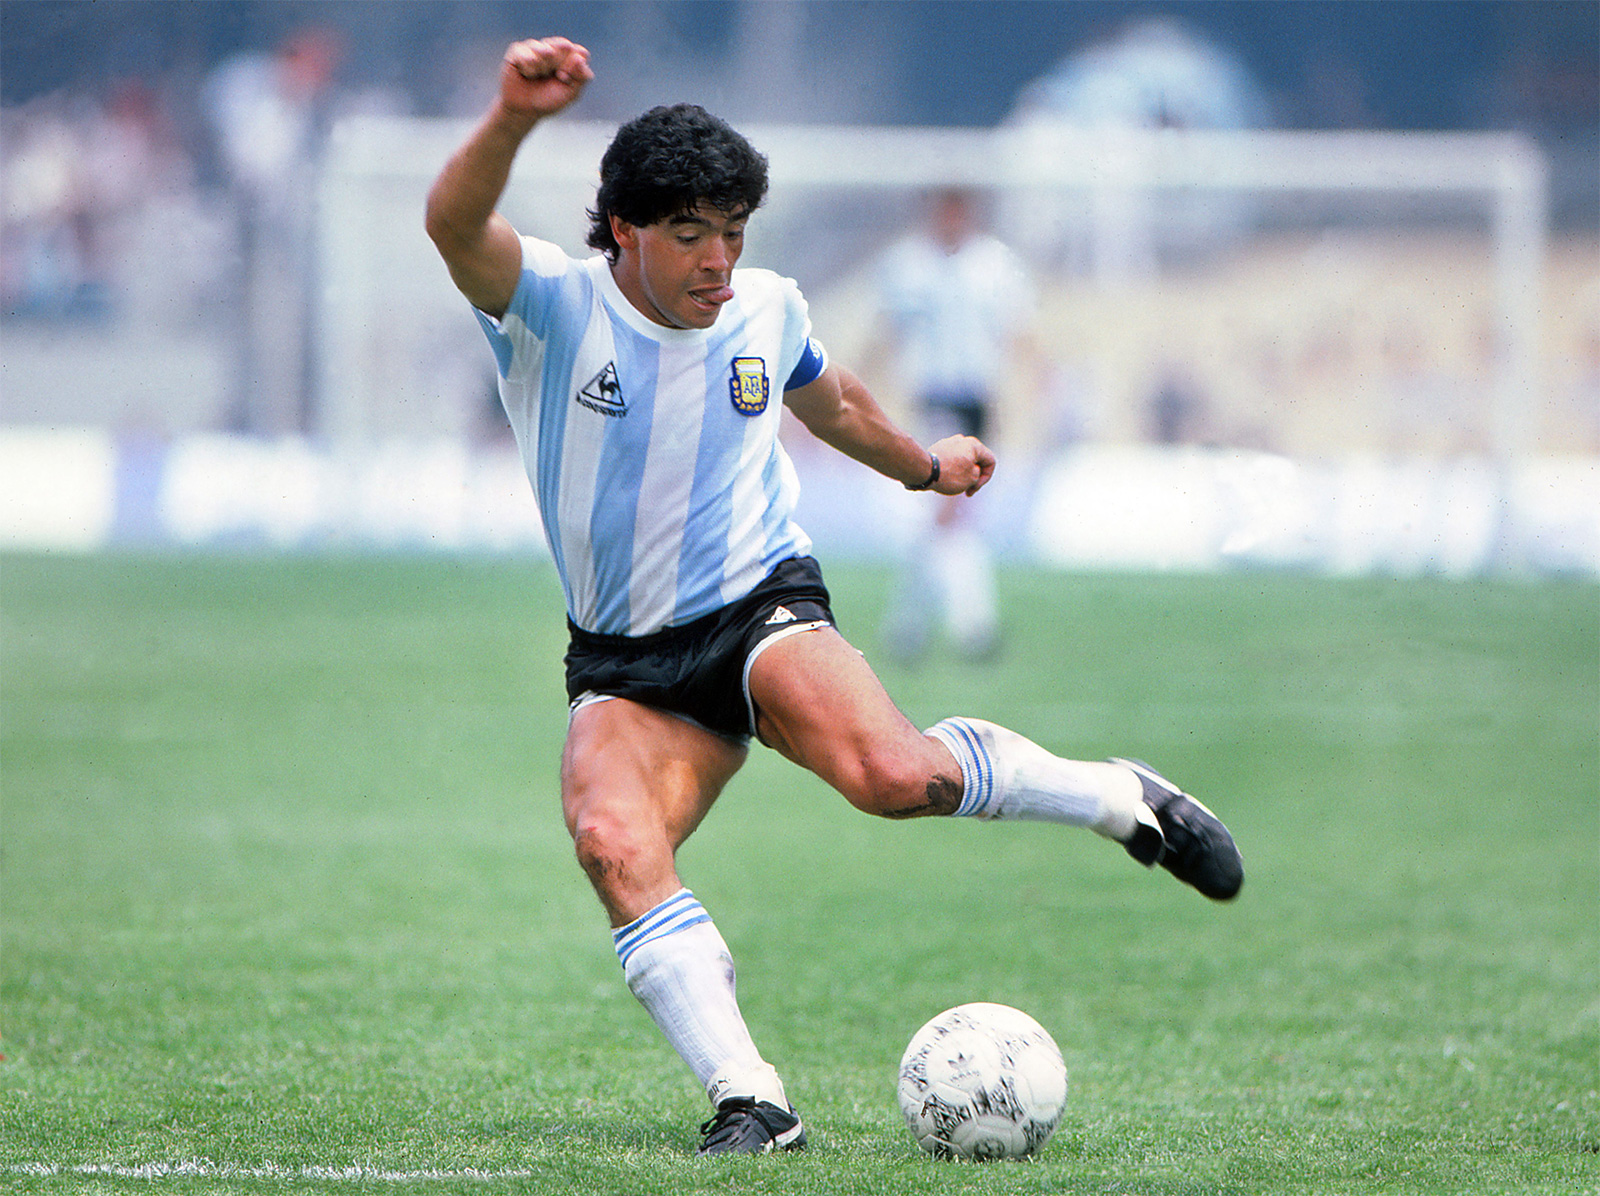 Diego-Maradona-1986